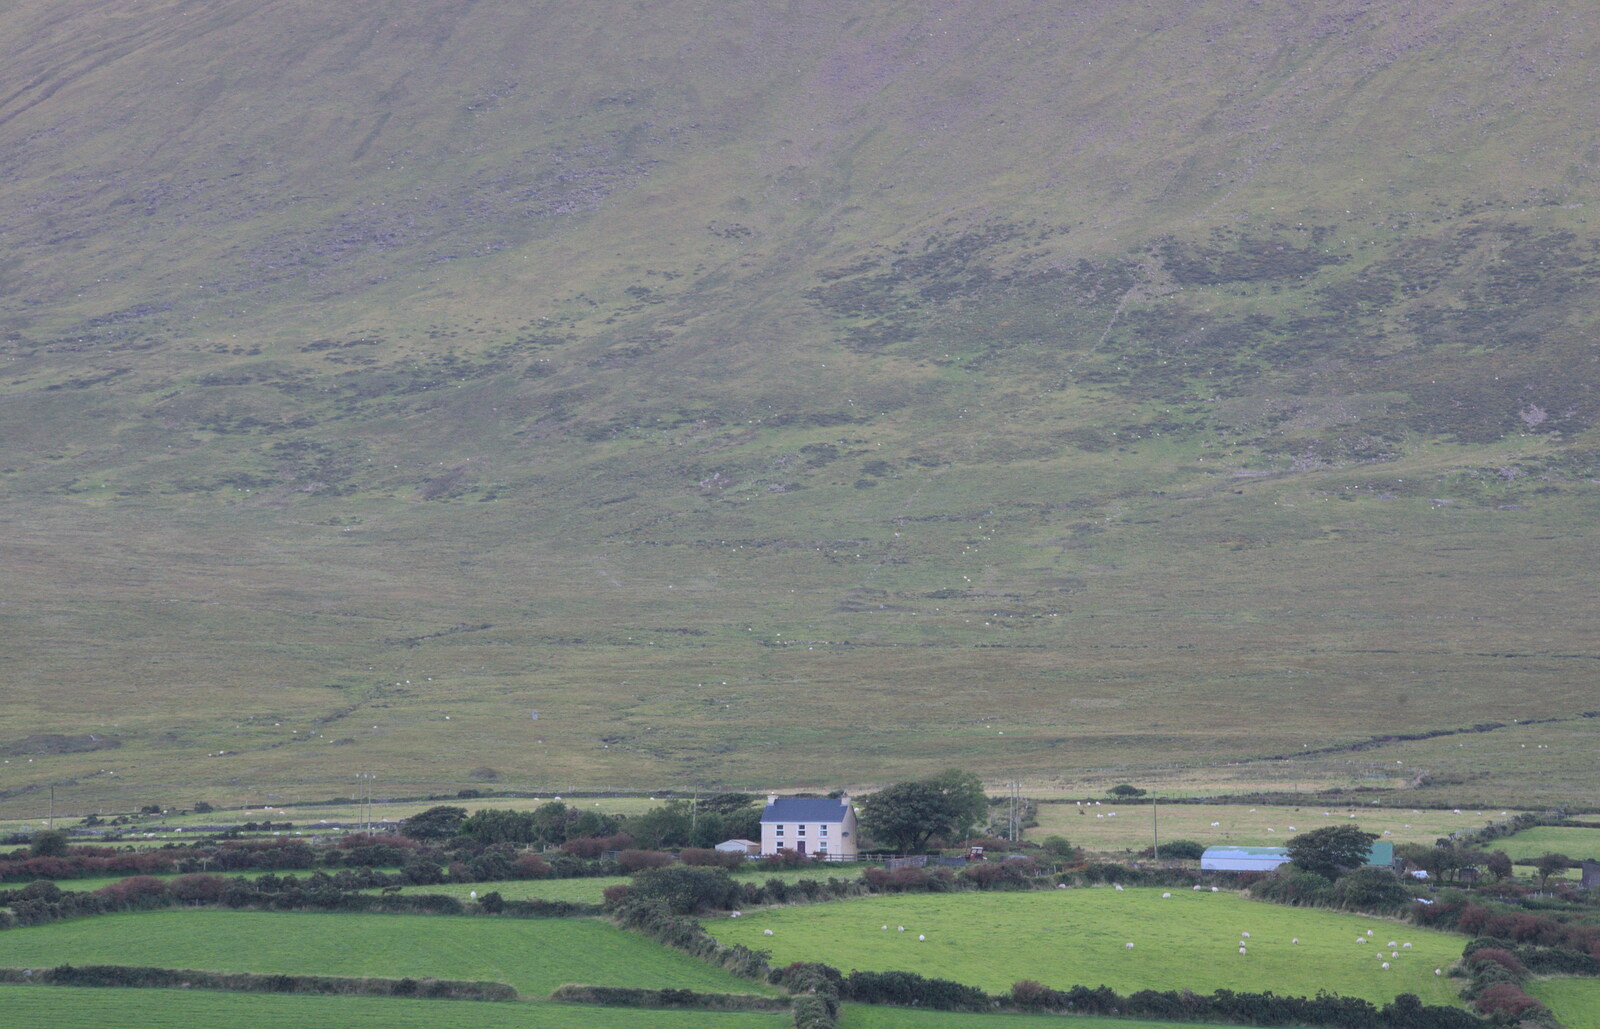 A house and a hill from The Annascaul 10k Run, Abha na Scáil, Kerry, Ireland - 5th August 2017